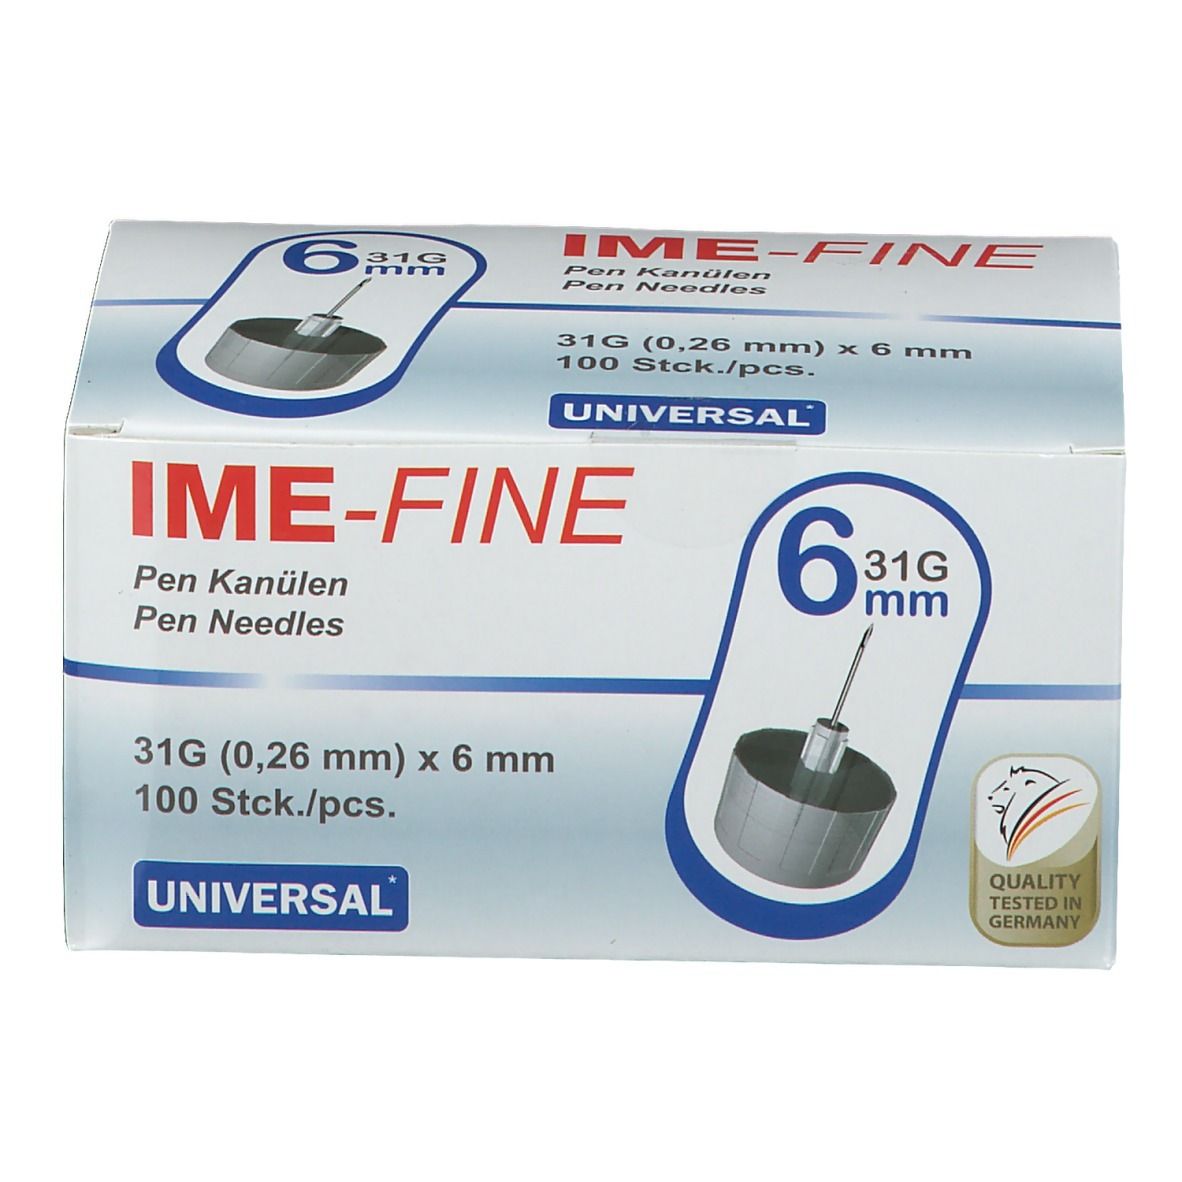 IME FINE Universal Pen Kanülen 31 g, 6 mm